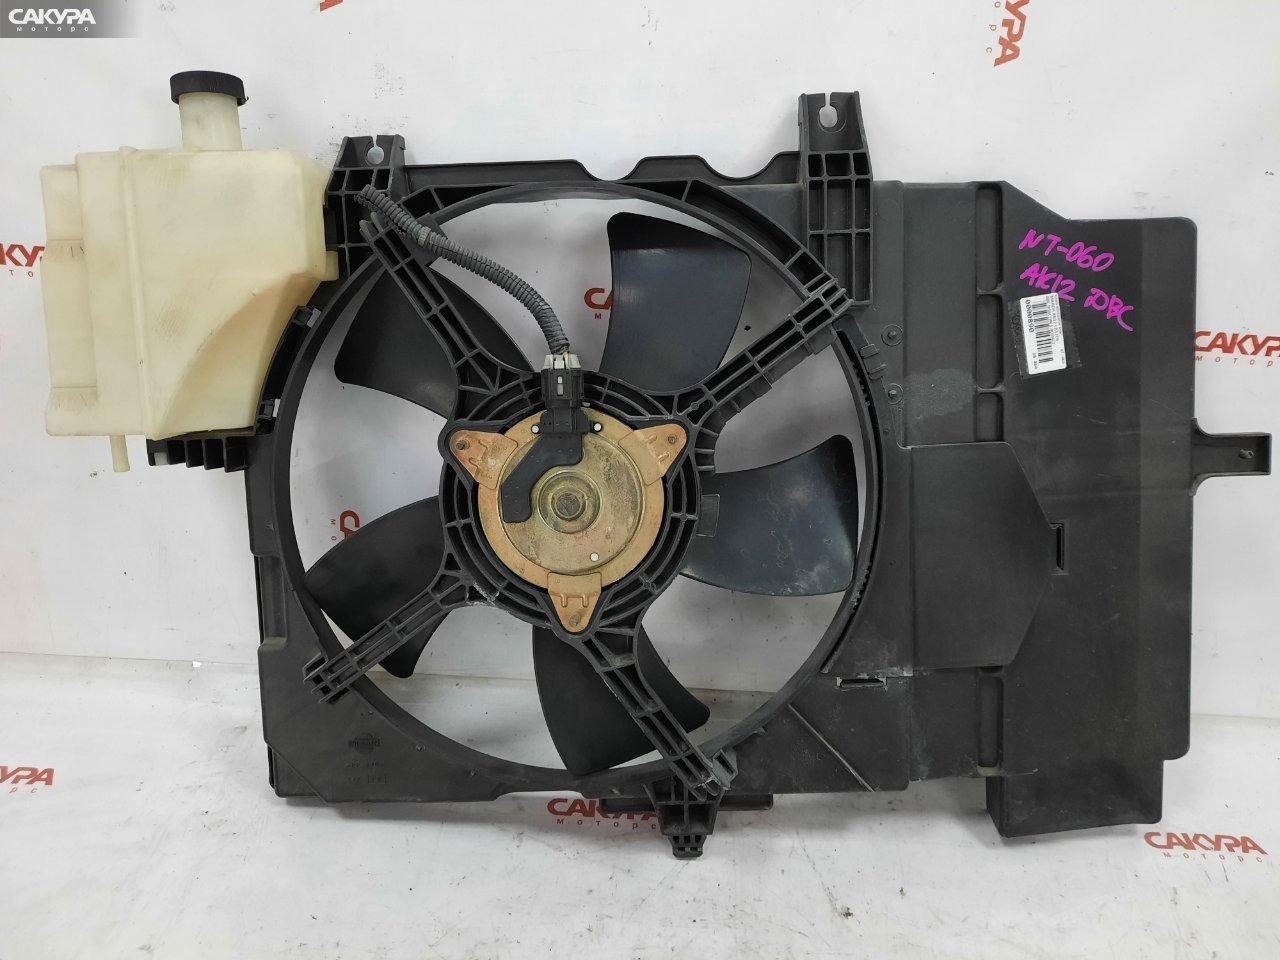 Вентилятор радиатора двигателя Nissan March AK12 CR12DE: купить в Сакура Красноярск.